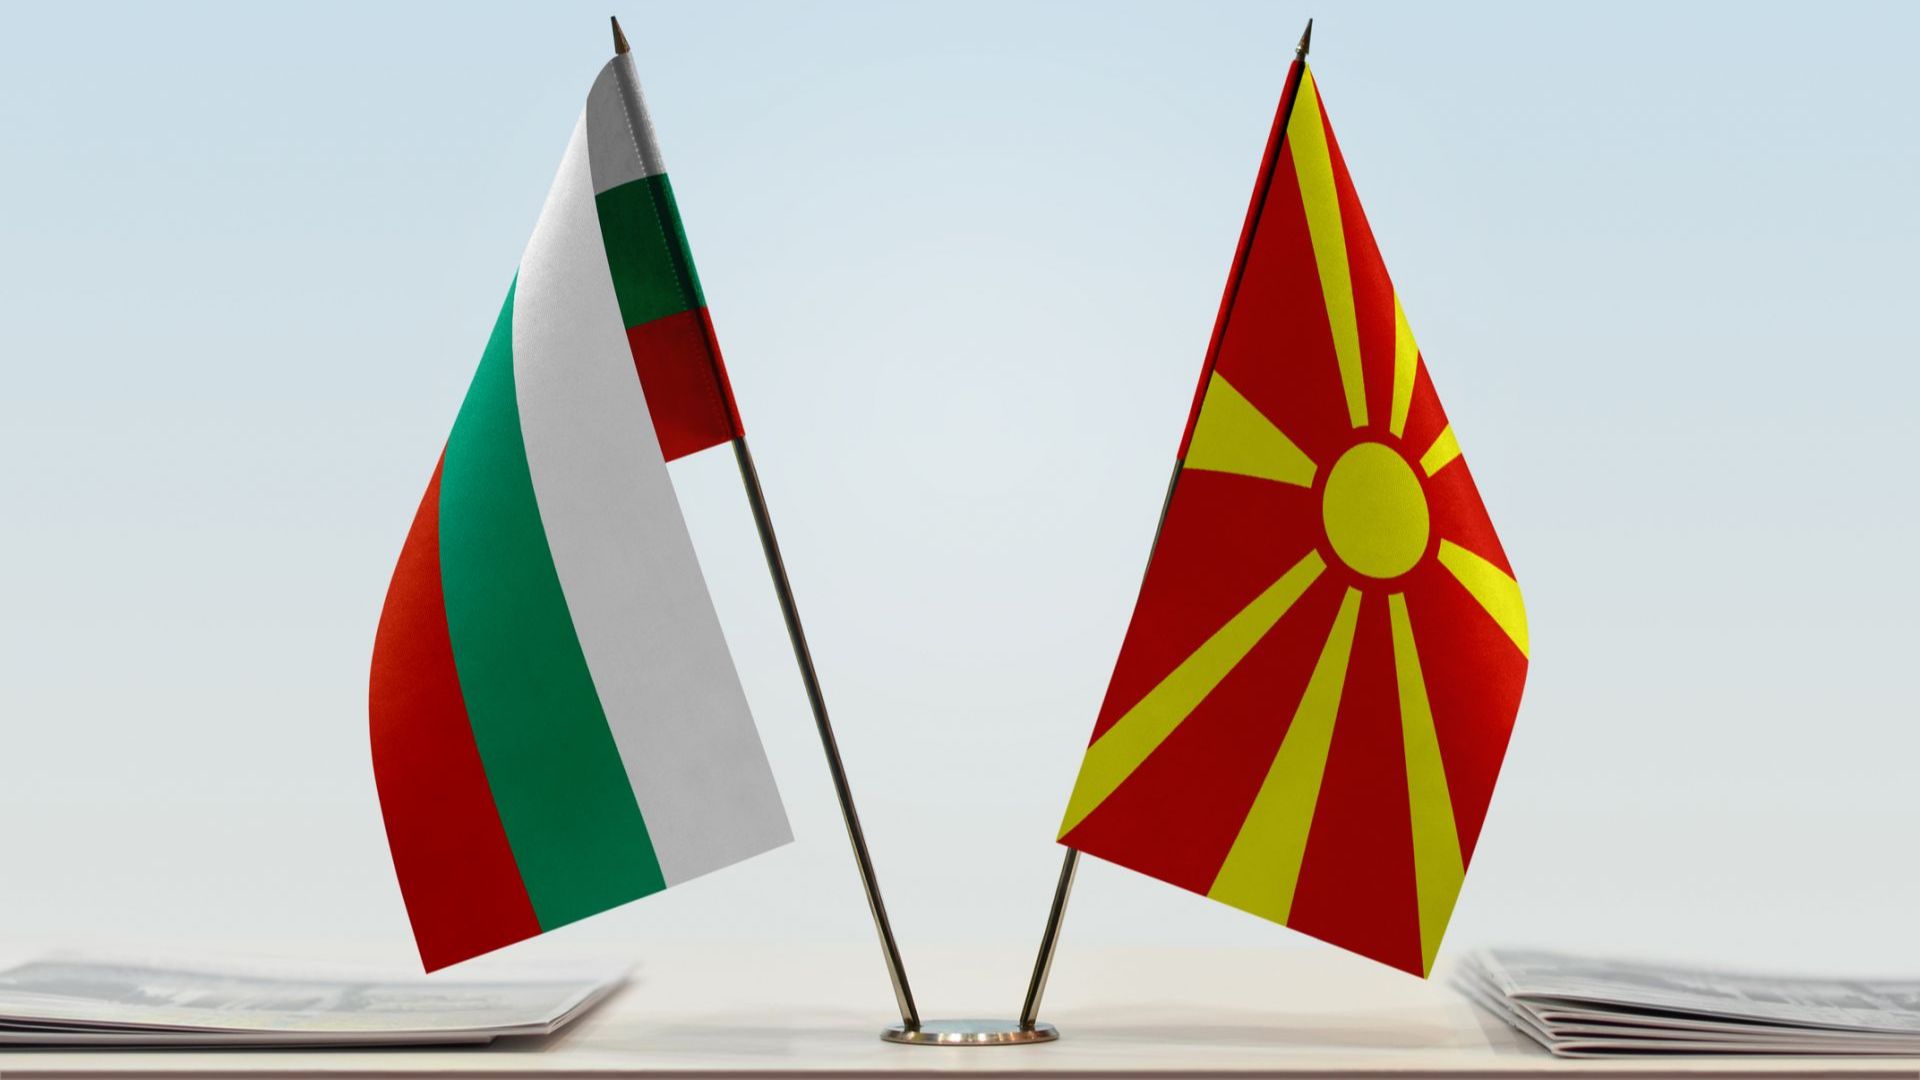 Скопие: Надяваме се на бърз отговор от България за нашите предложения